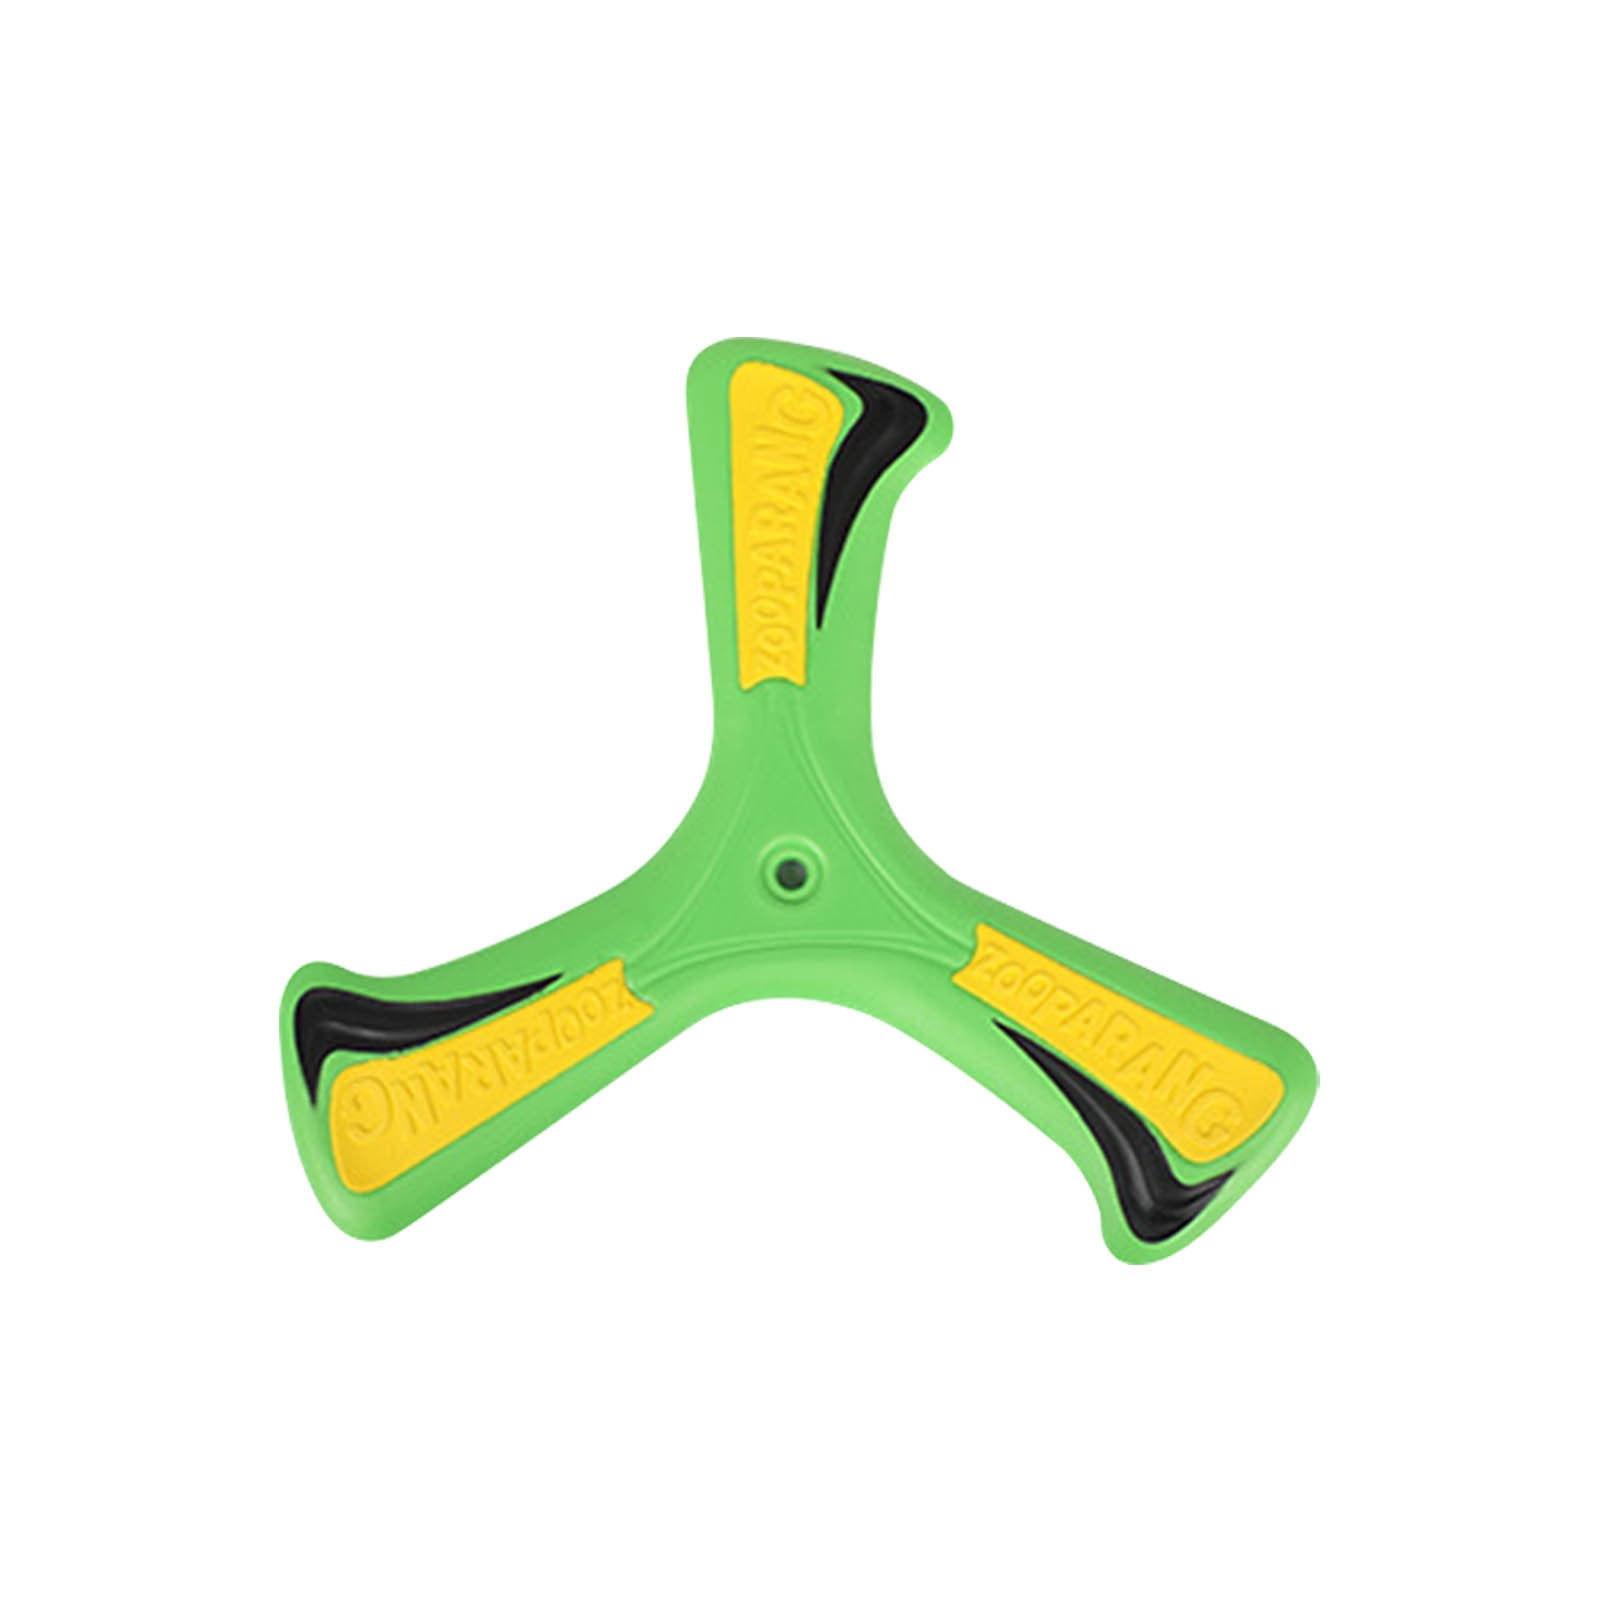 Rosilesi Neue hölzerne zurückkehrende Boomerang V-förmige Boomerang Outdoor Toy Sports Games